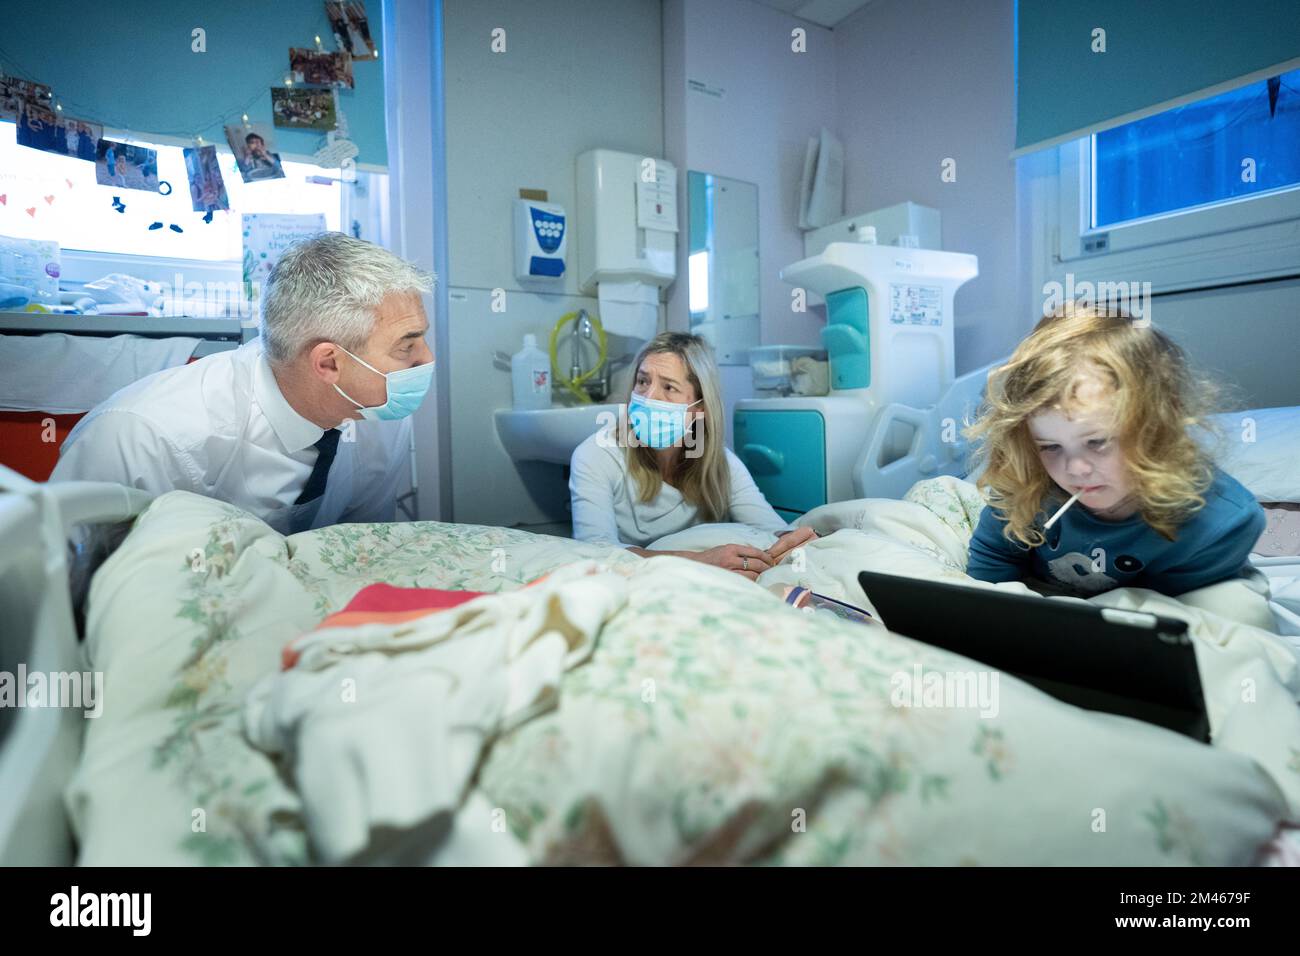 Steve Barclay, secrétaire à la Santé, rencontre Sarah Pinnington-Auld et sa fille de 3 ans, Lucy, qui souffre de fibrose kystique lors d'une visite à l'hôpital universitaire King's College de Londres. Date de la photo: Lundi 19 décembre 2022. Banque D'Images